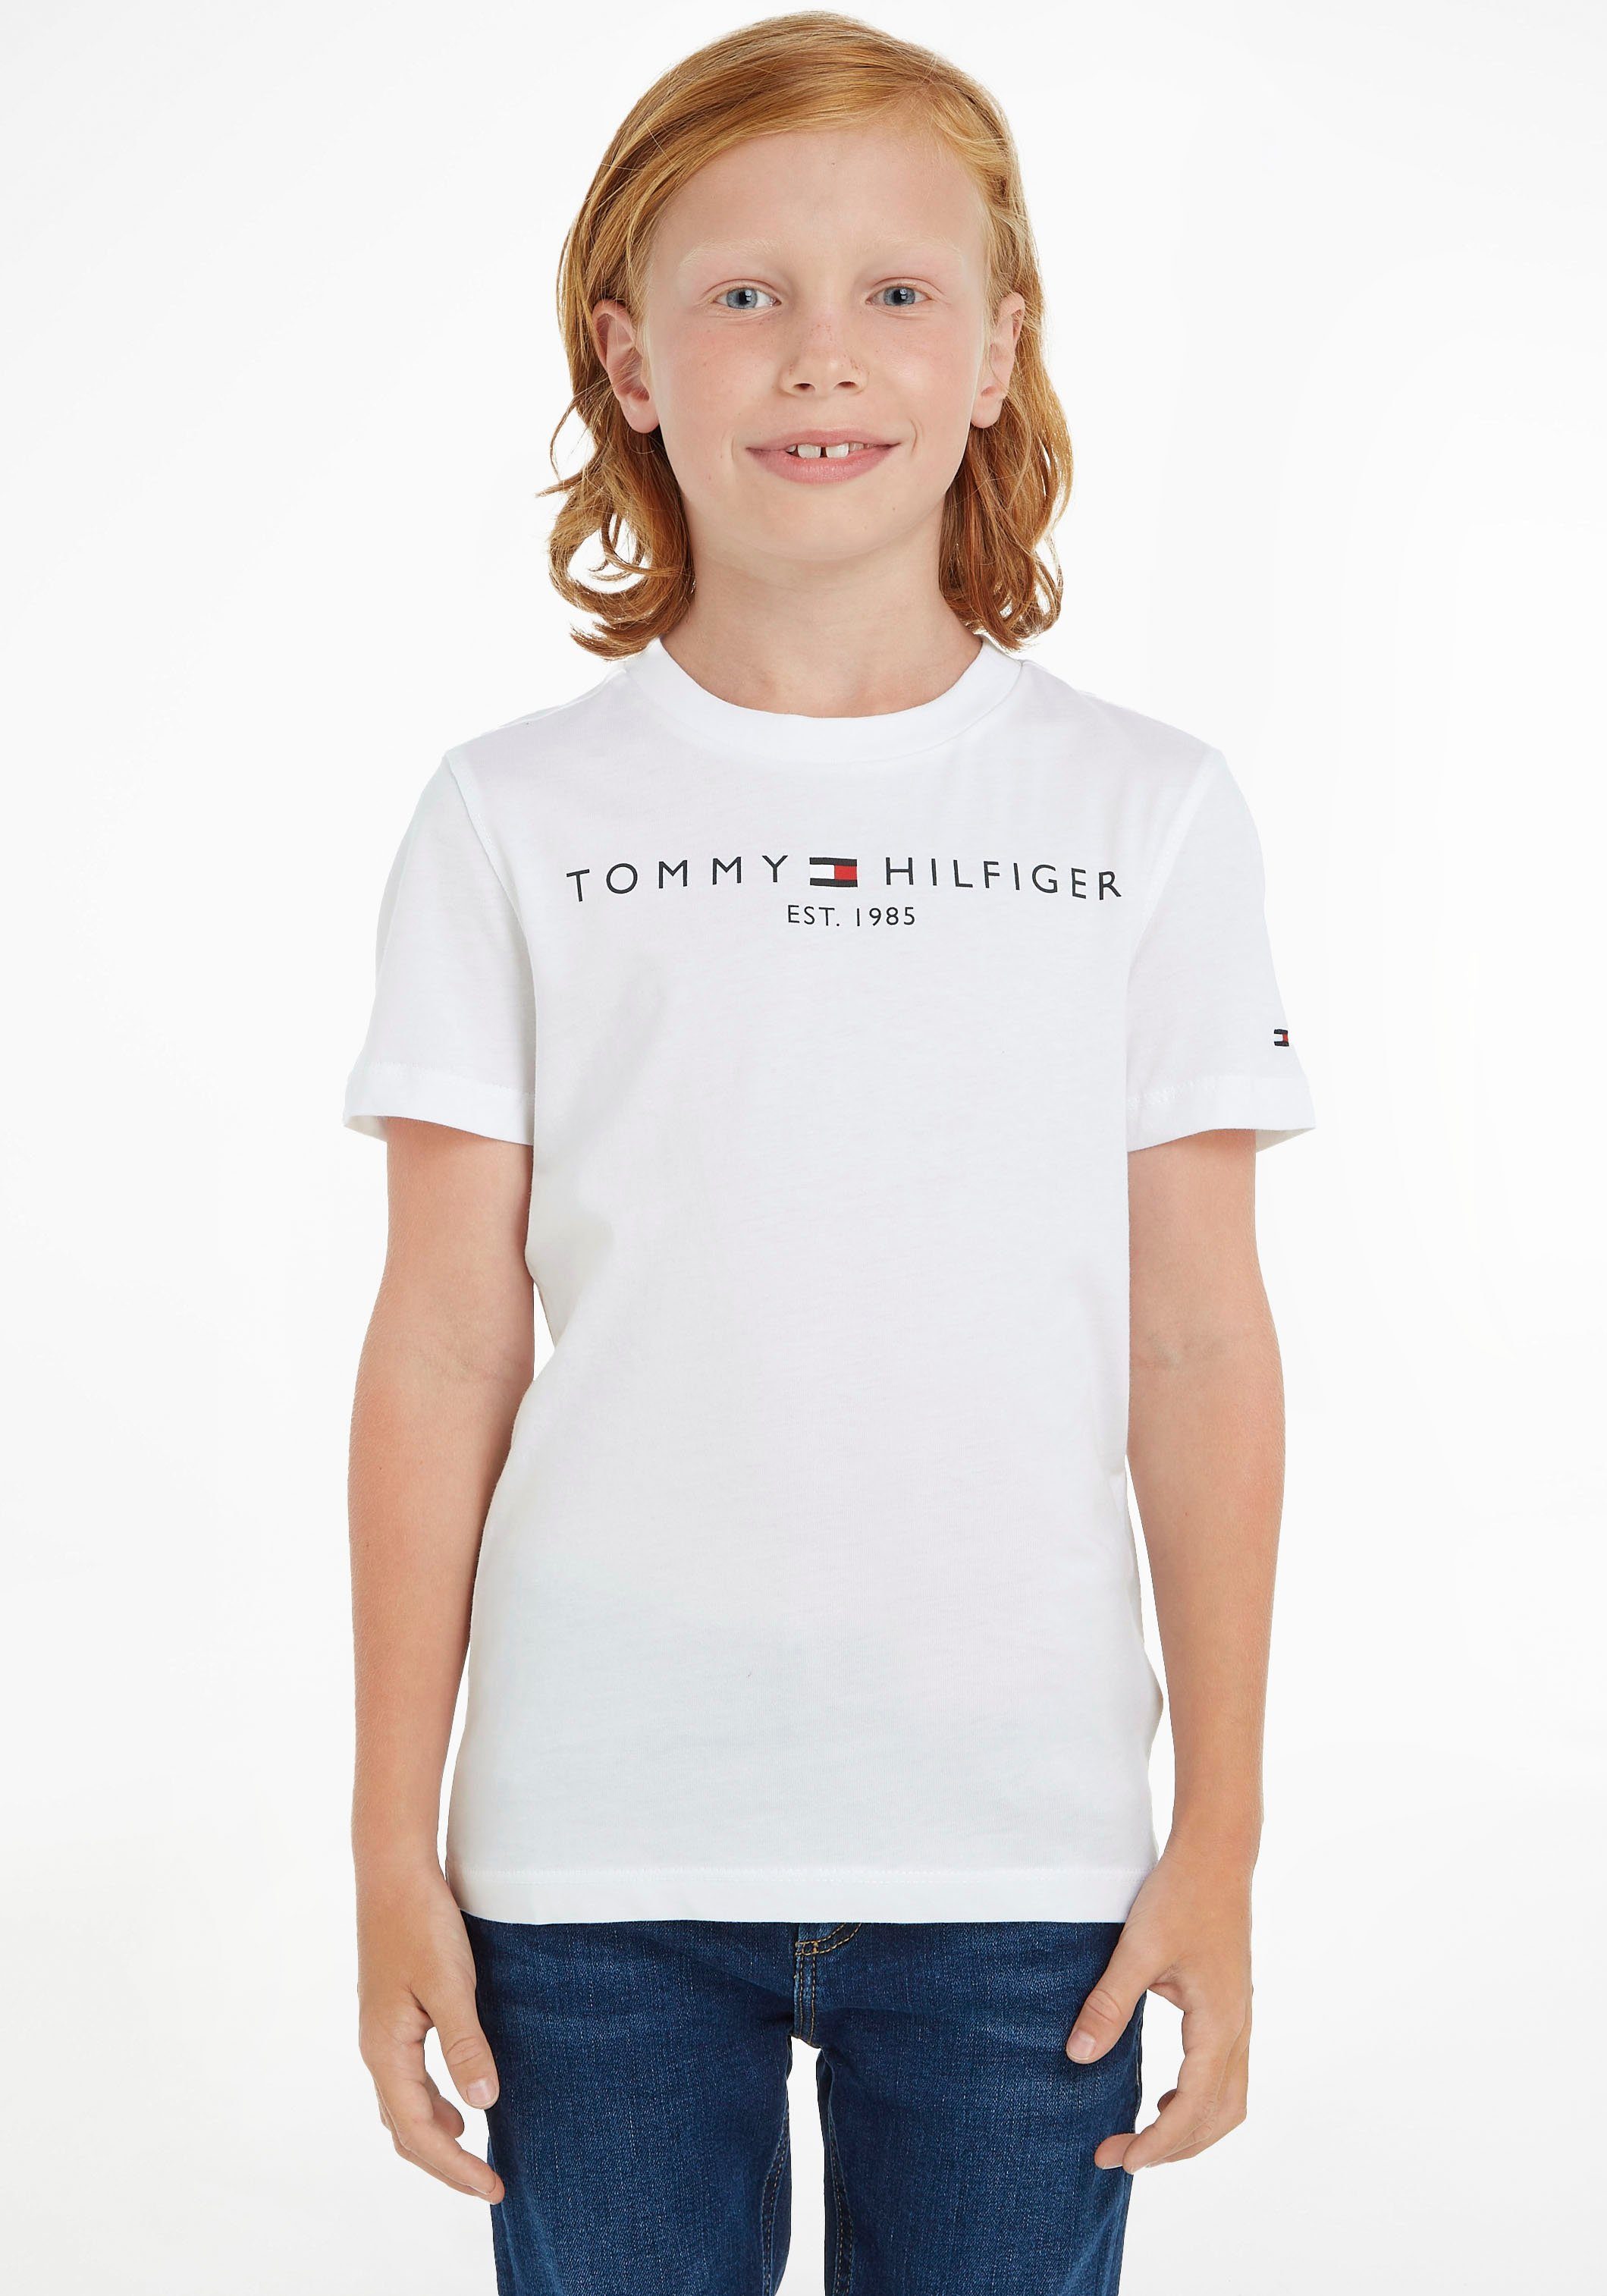 ESSENTIAL TEE Jungen T-Shirt Mädchen Kids Kinder Hilfiger MiniMe,für Junior Tommy und